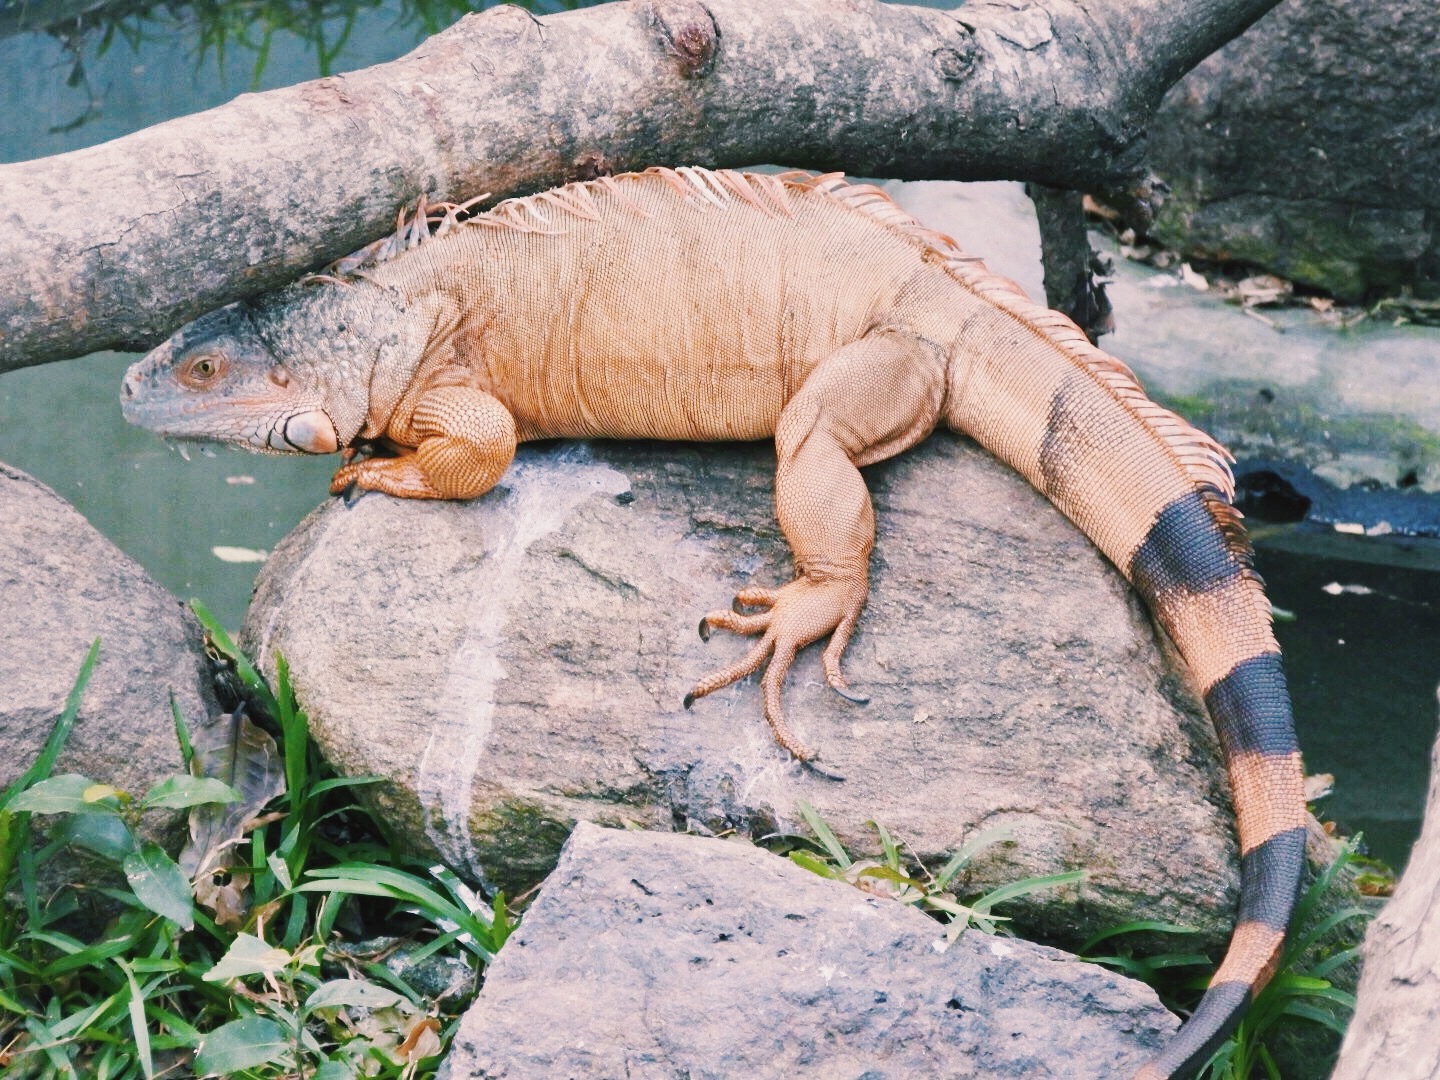 The green iguana that turned orange